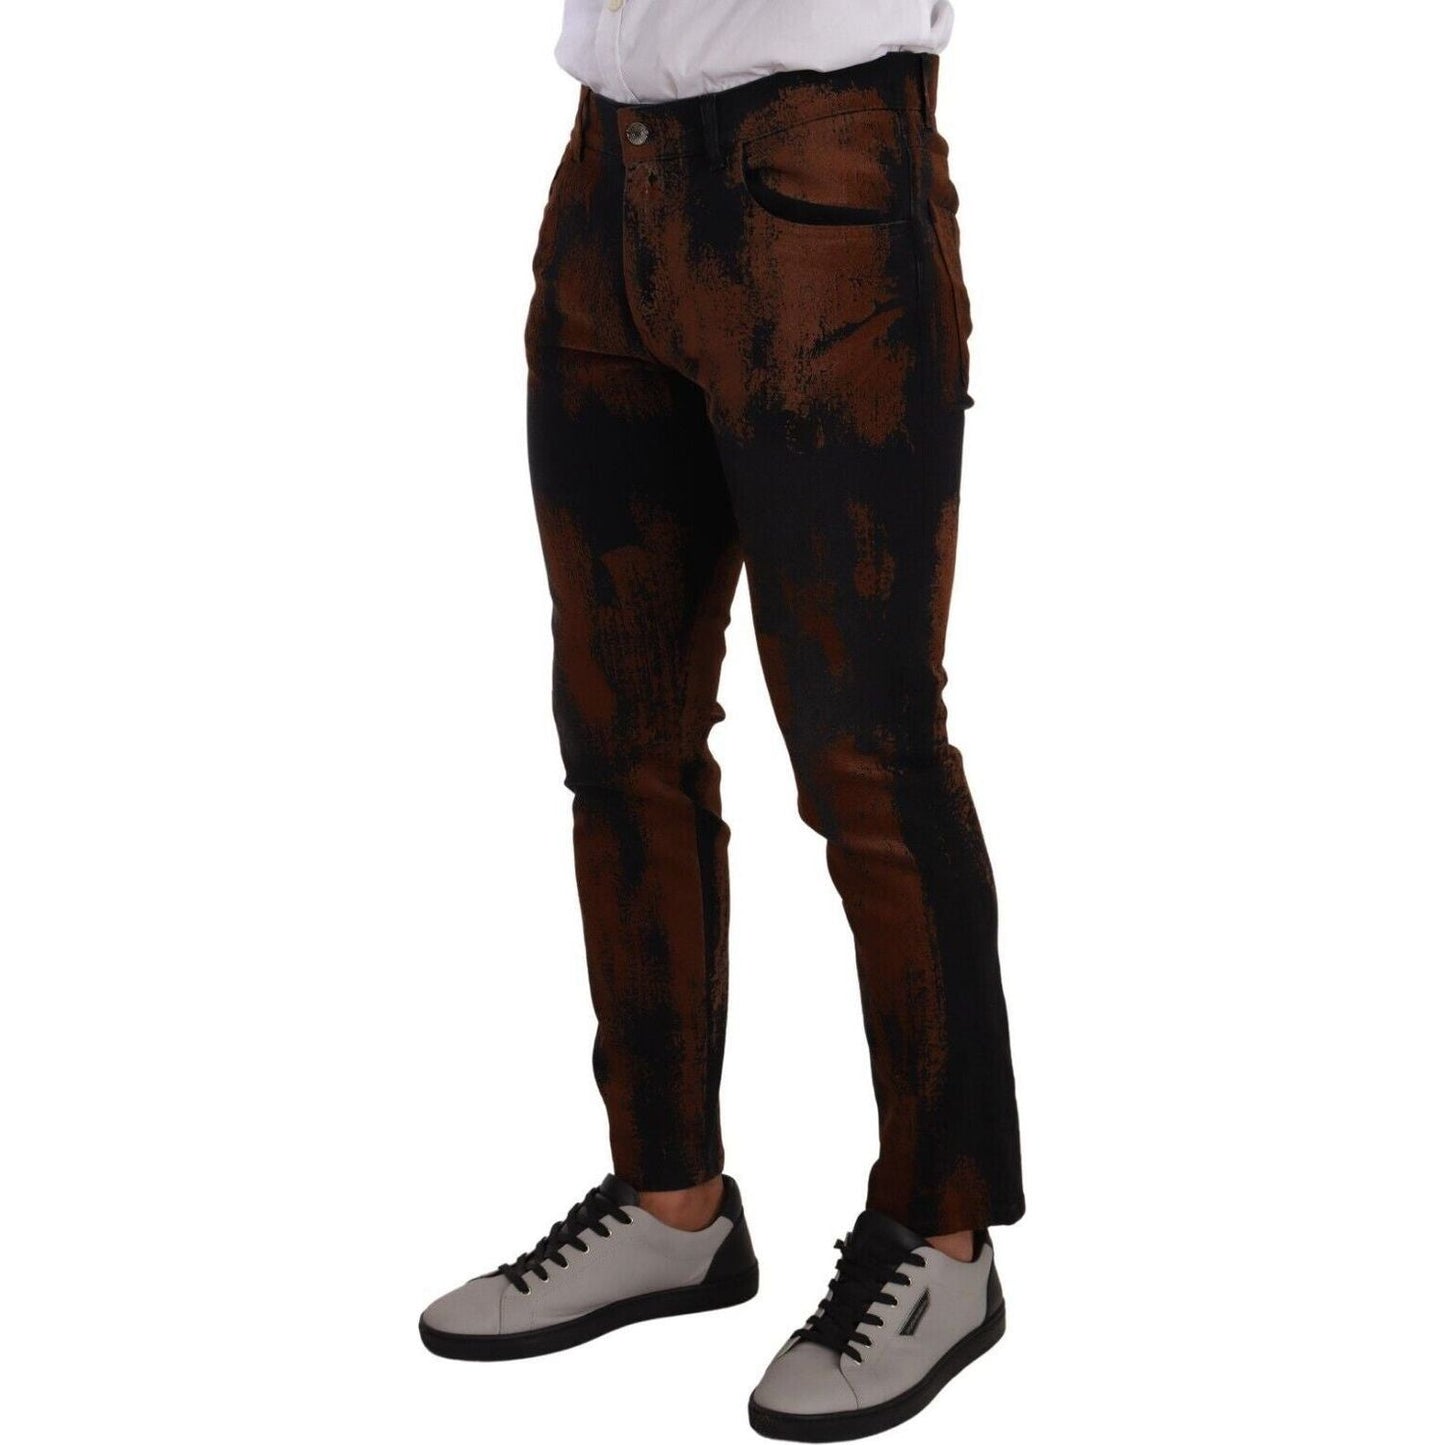 Dolce & GabbanaChic Black Brown Tie-Dye Slim Fit JeansMcRichard Designer Brands£469.00